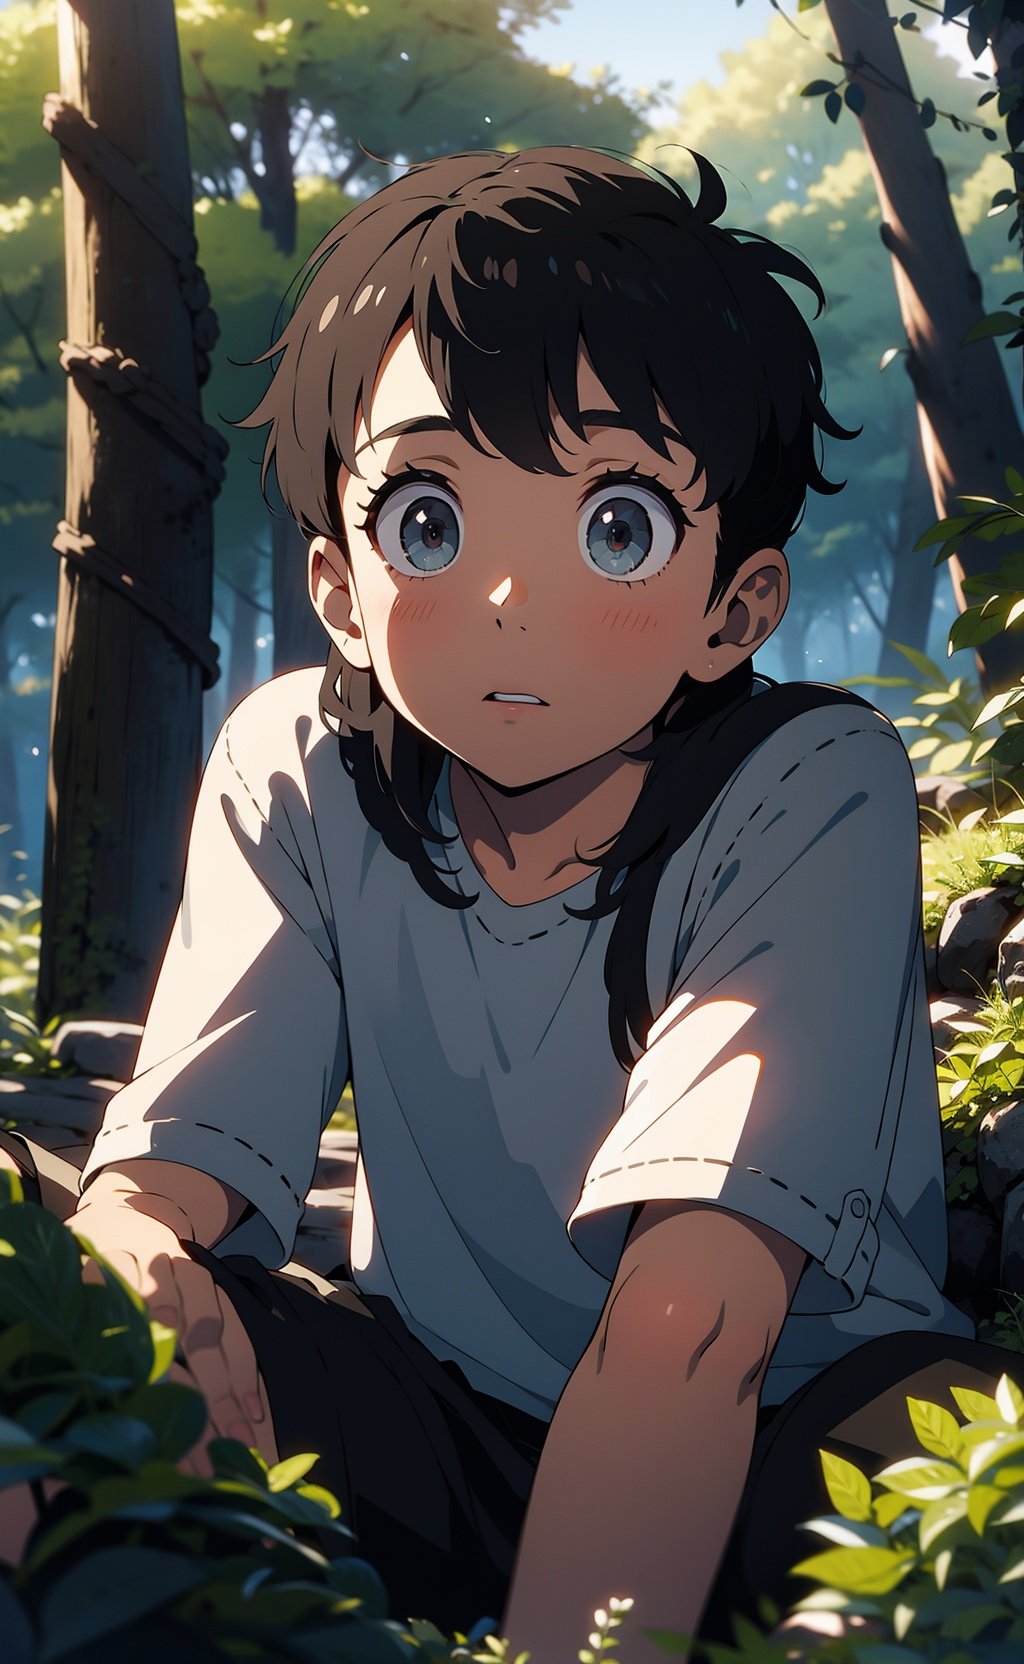 a boy,forest, big eyes,